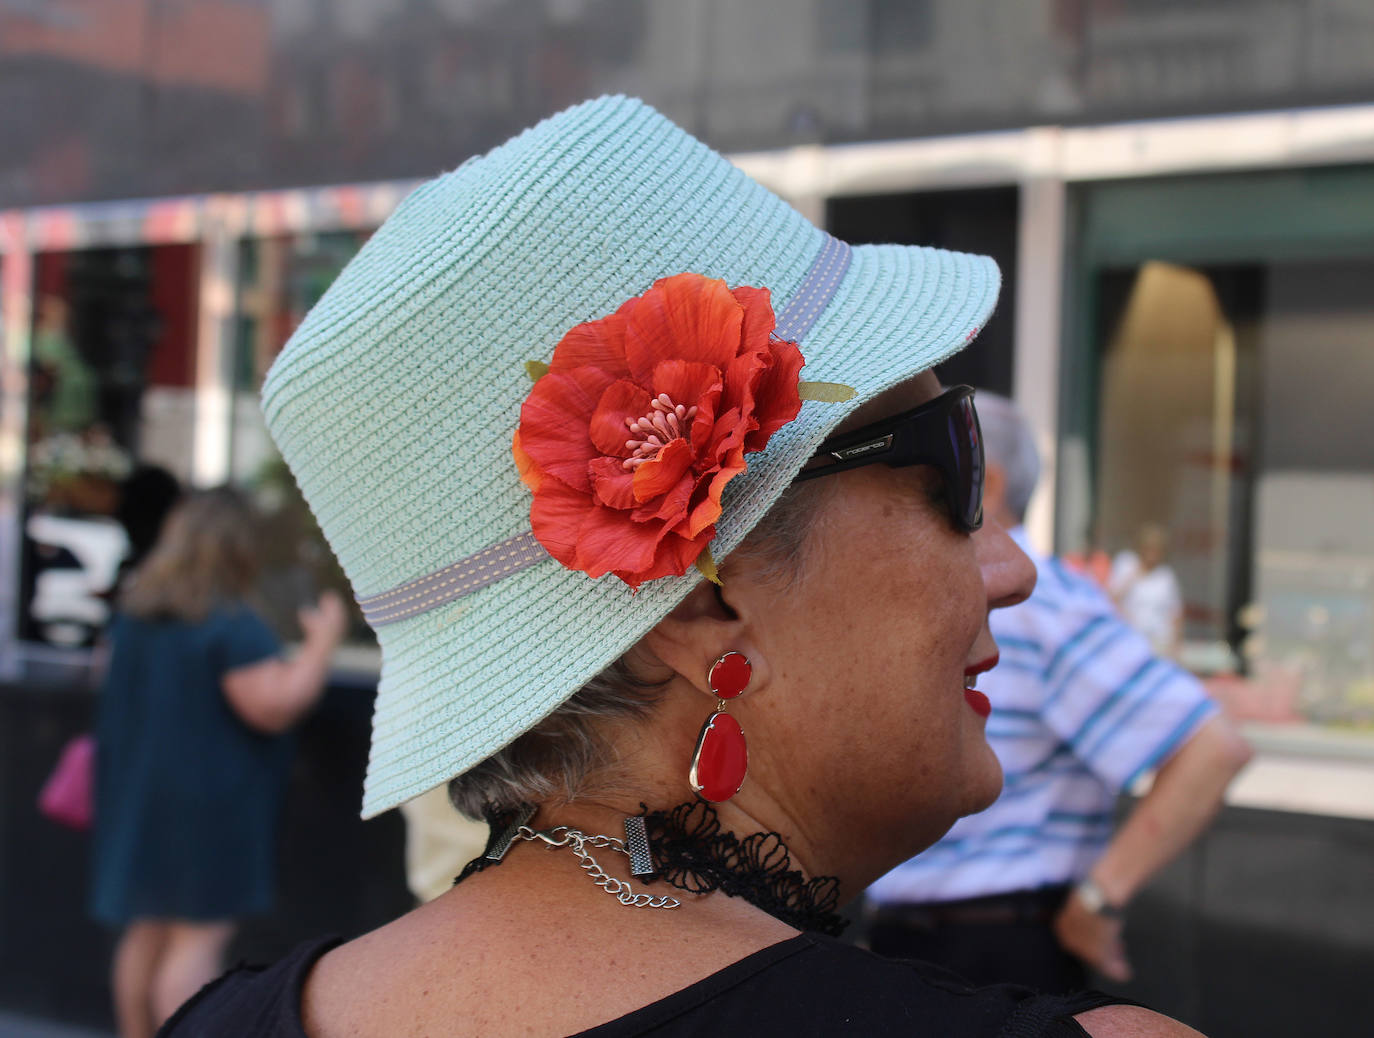 Imagen principal - Los mejores looks con sombrero del &#039;street style&#039; en Valladolid